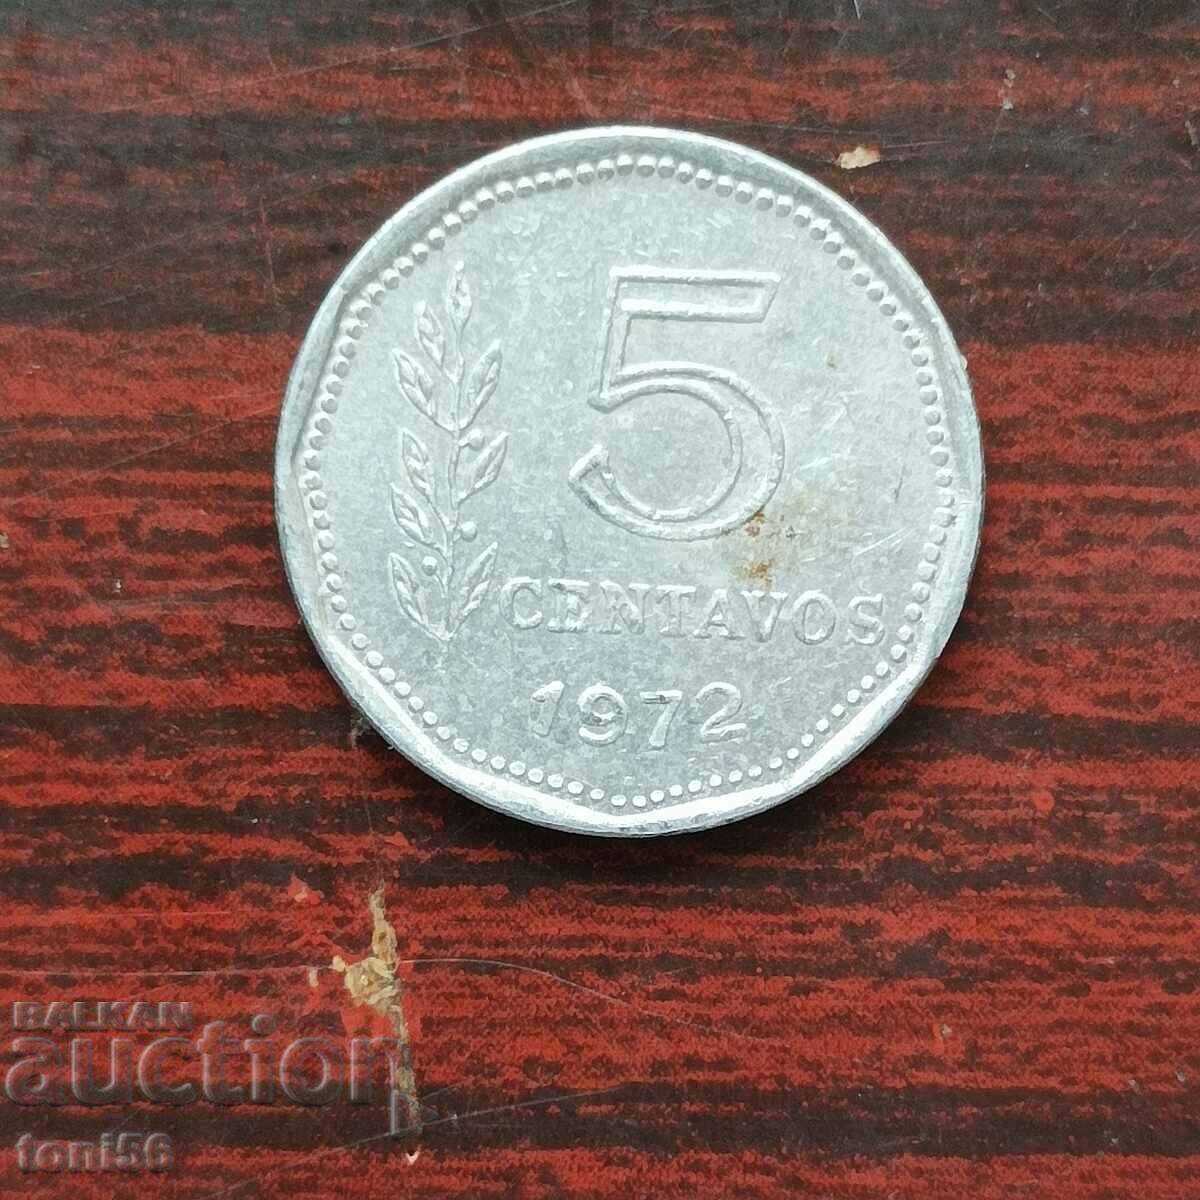 Argentina 5 centavos 1972